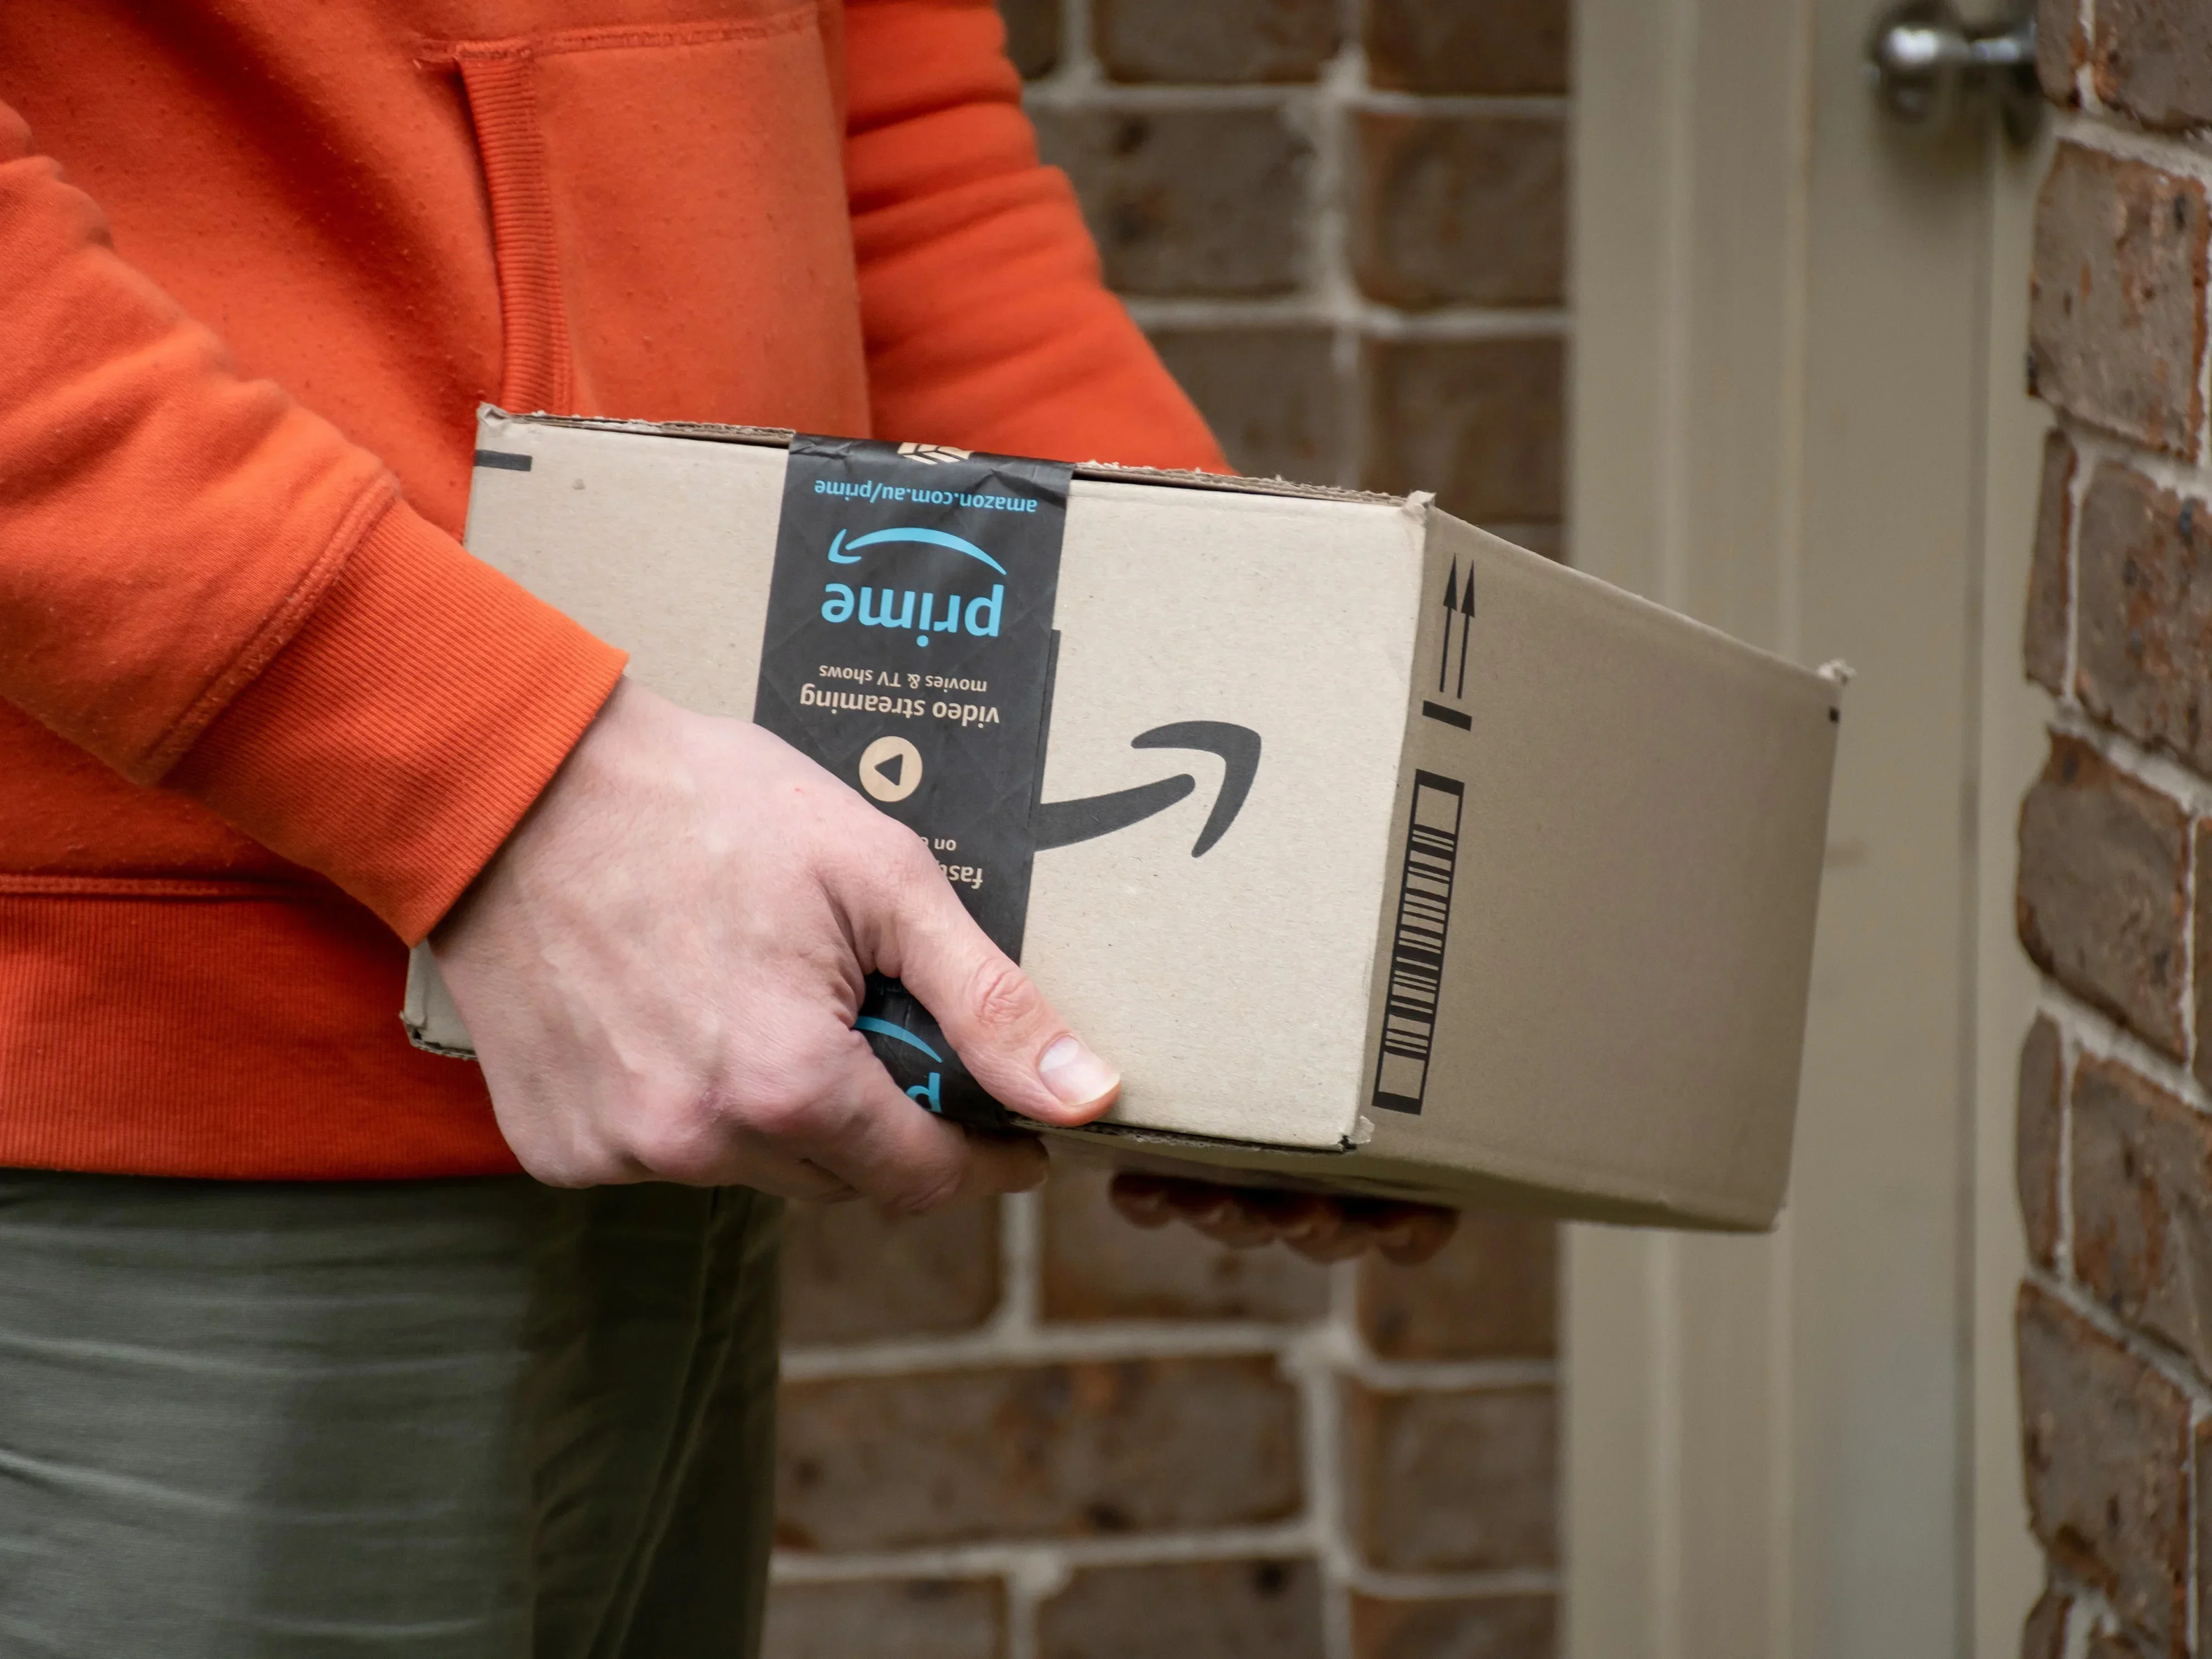 #Gratis bei Amazon: Neuer Prime-Vorteil spart jede Menge Geld